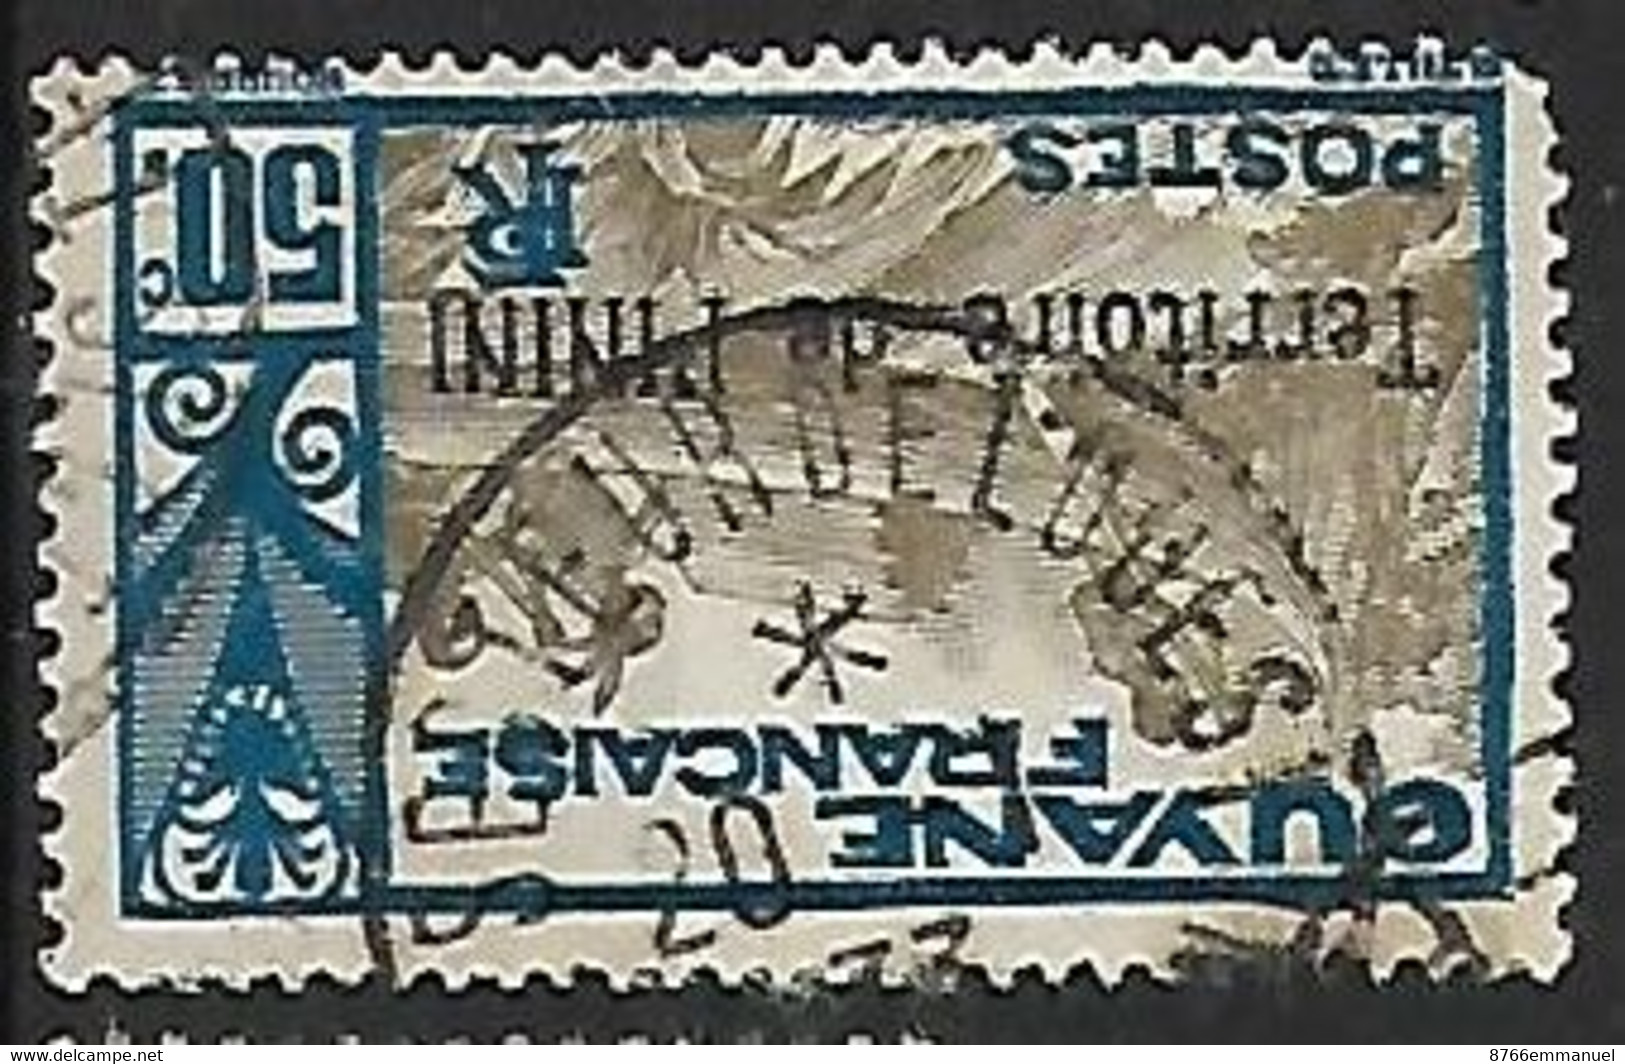 ININI N°12 Avec Oblitération "Secteur De L'Ouest" - Used Stamps